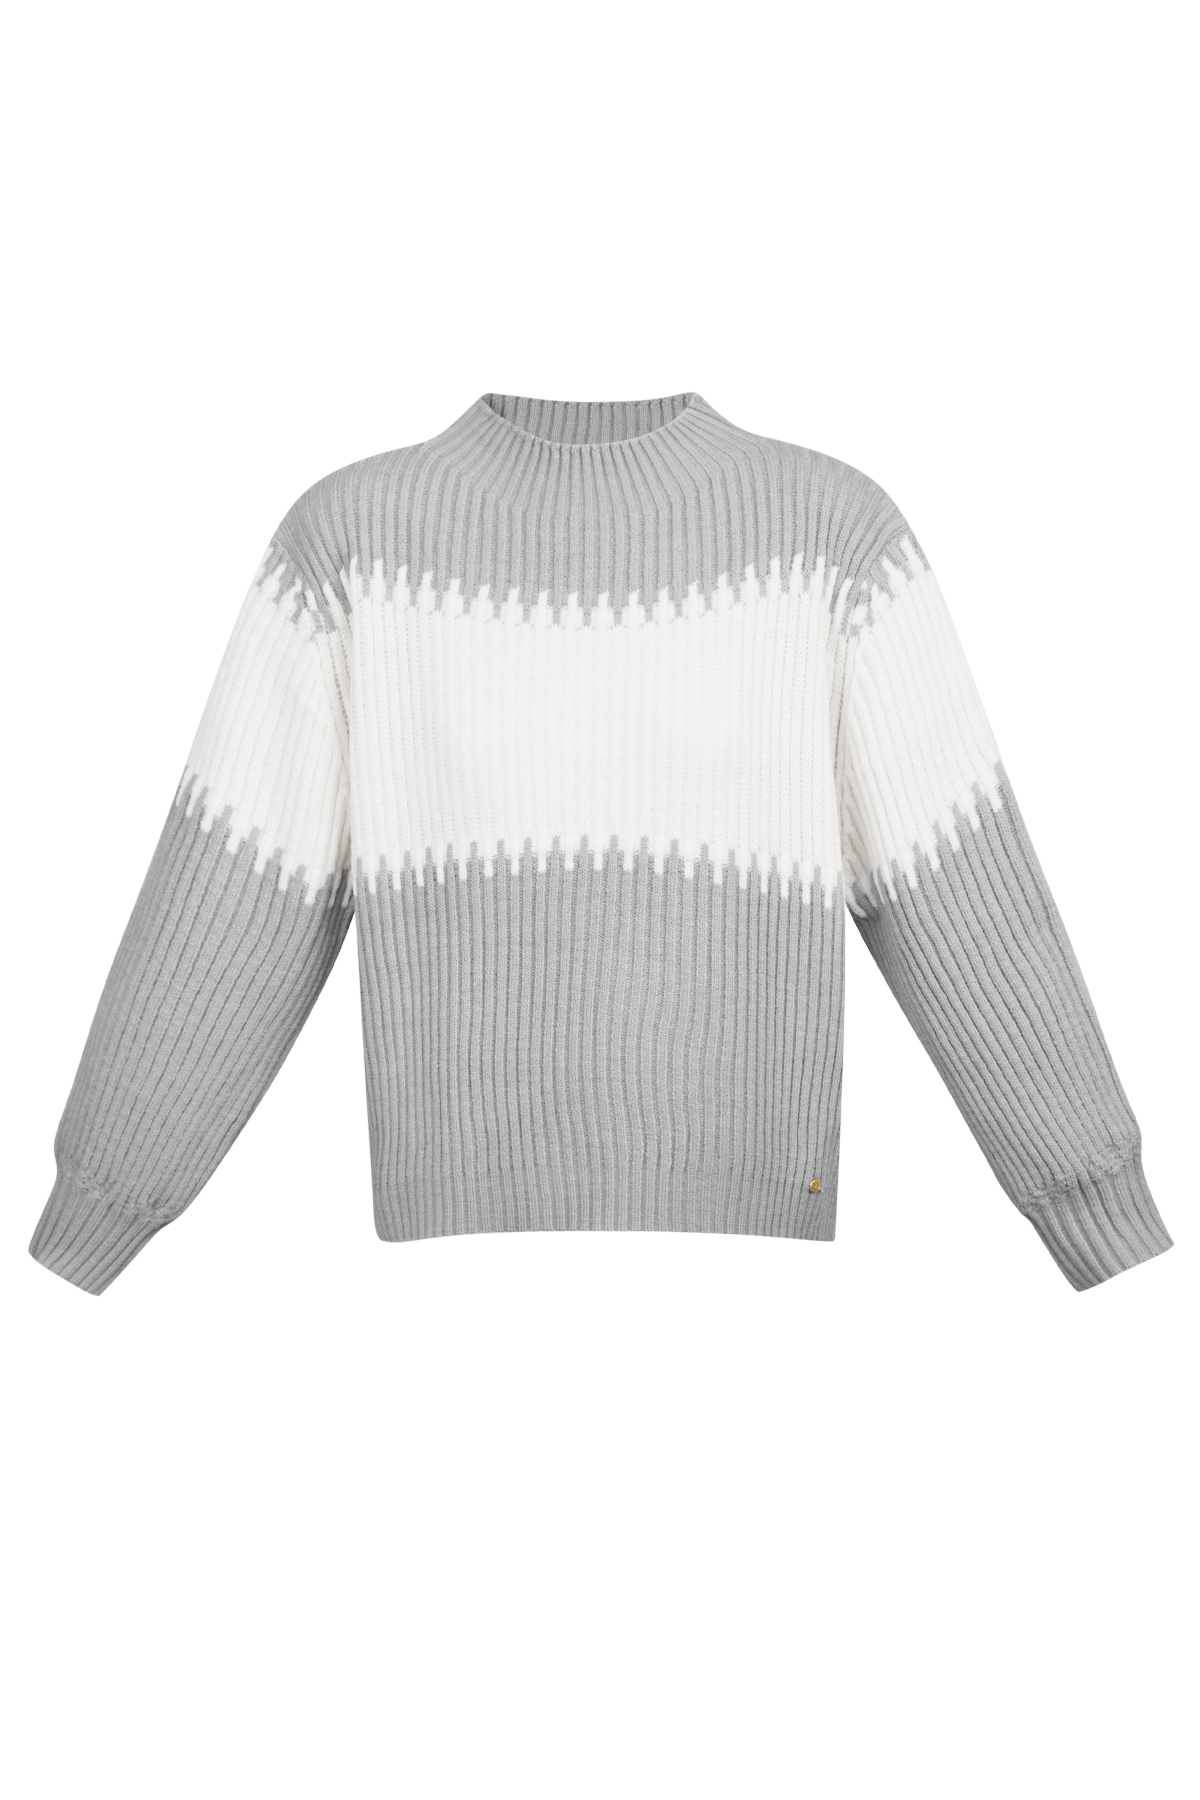 Gestrickter Pullover mit großen Streifen – grau